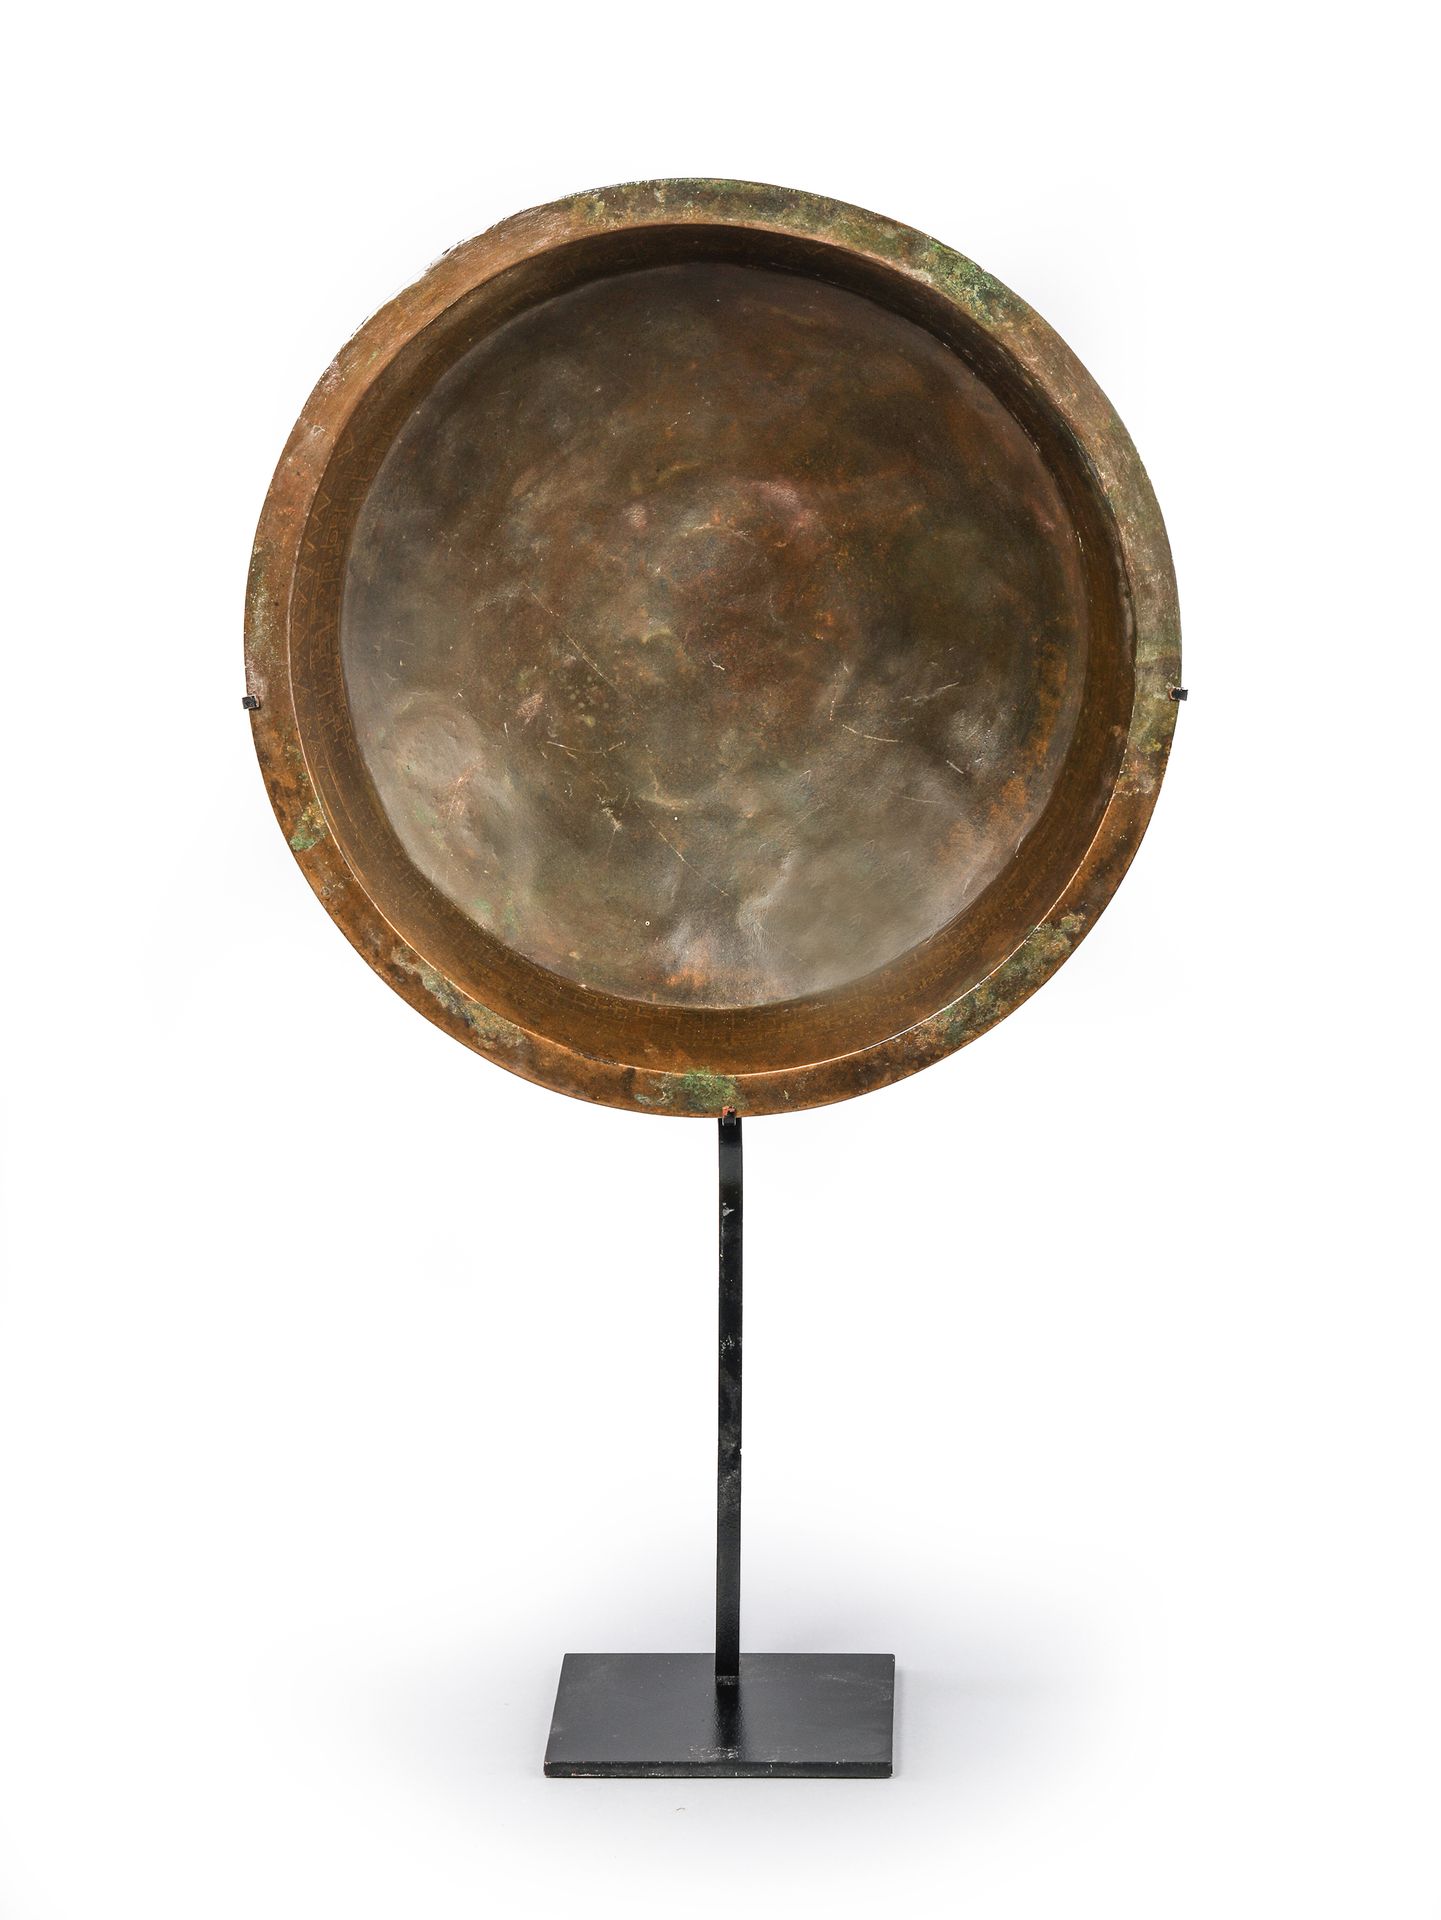 Null 圆形盆，有金色的几何装饰。
中国 周 公元前5世纪初。
H.31厘米，D. 38厘米
(修复的作品)